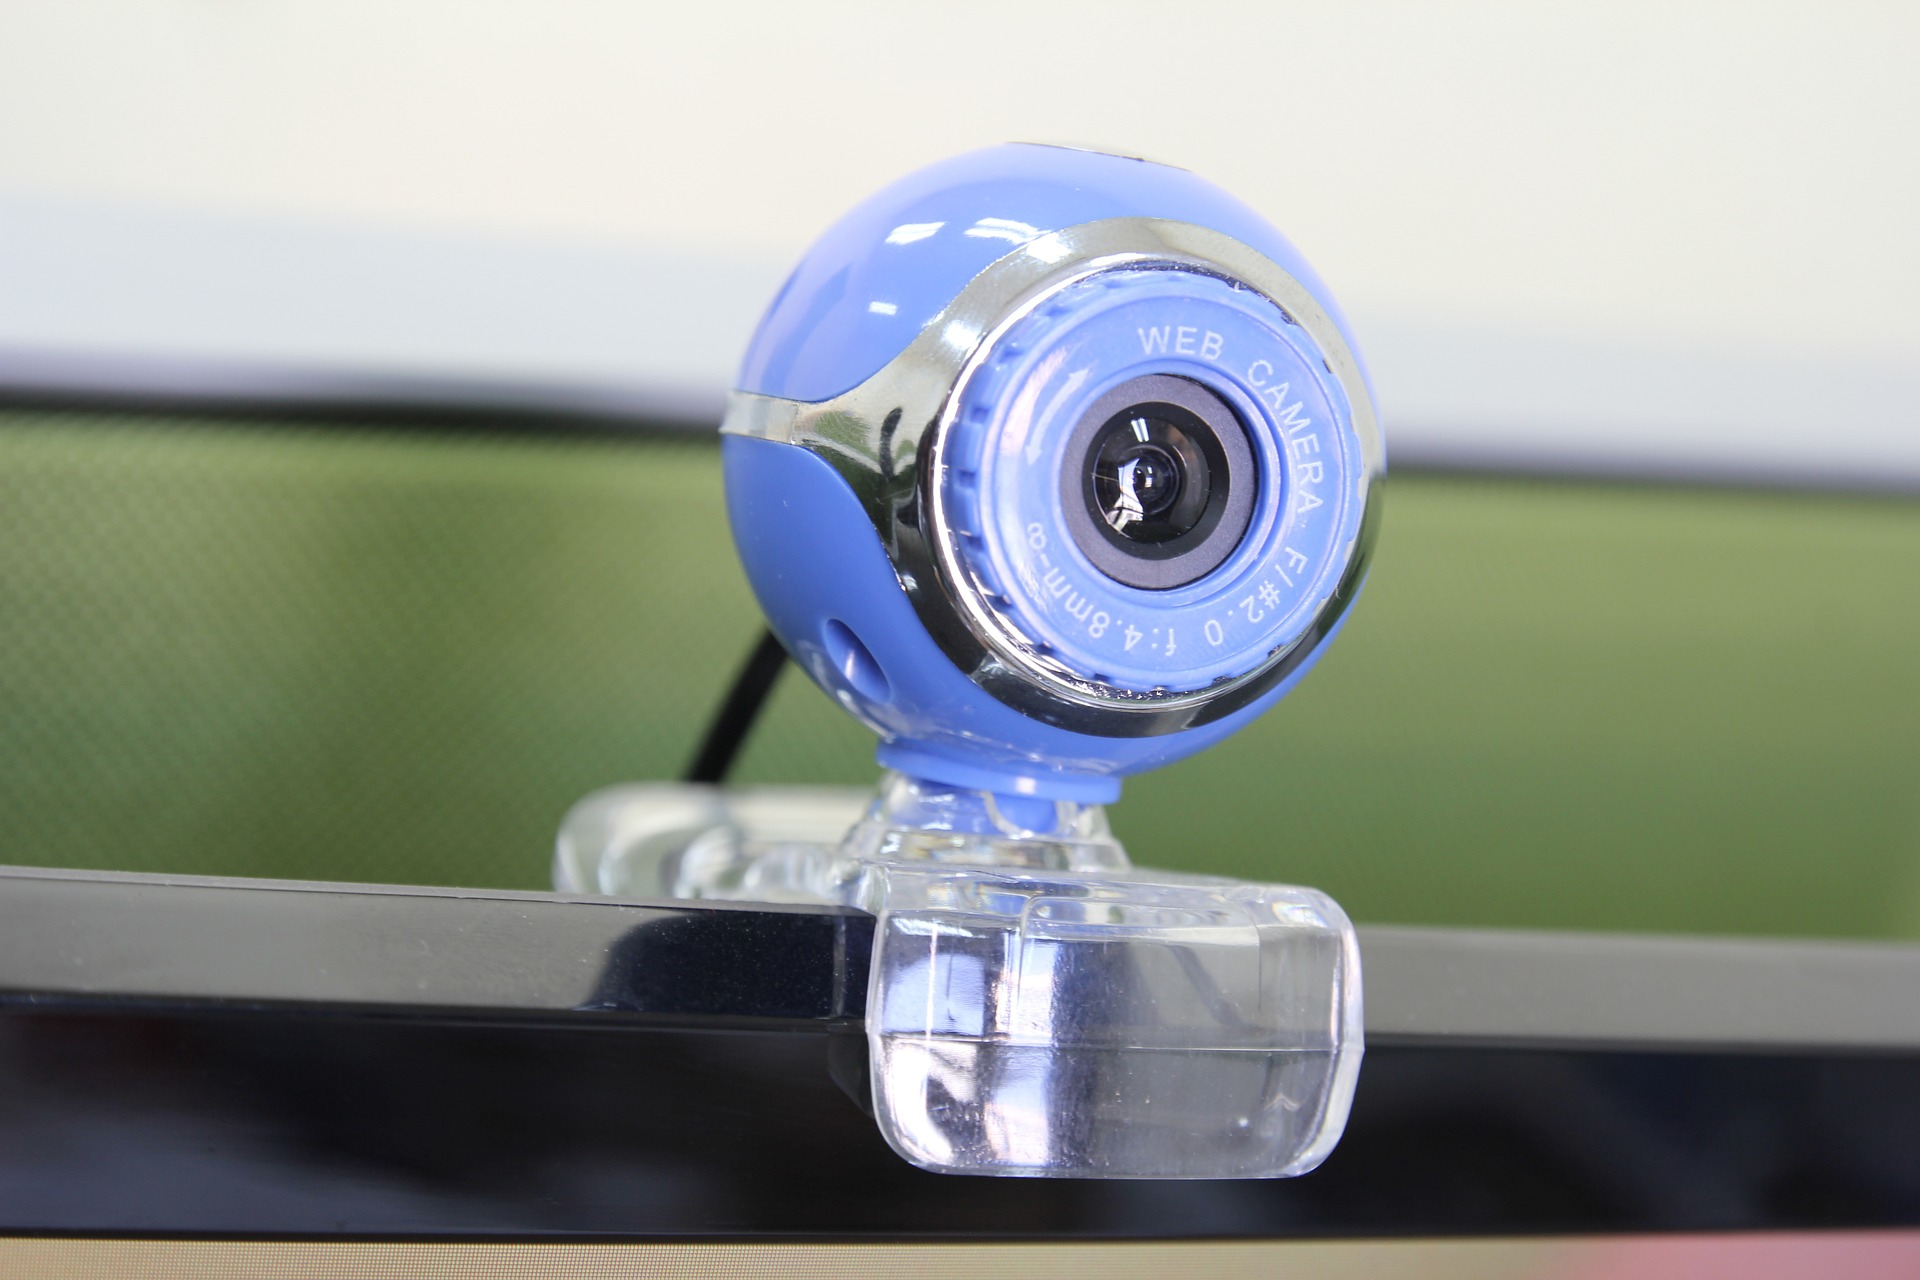 Closeup of a webcam.